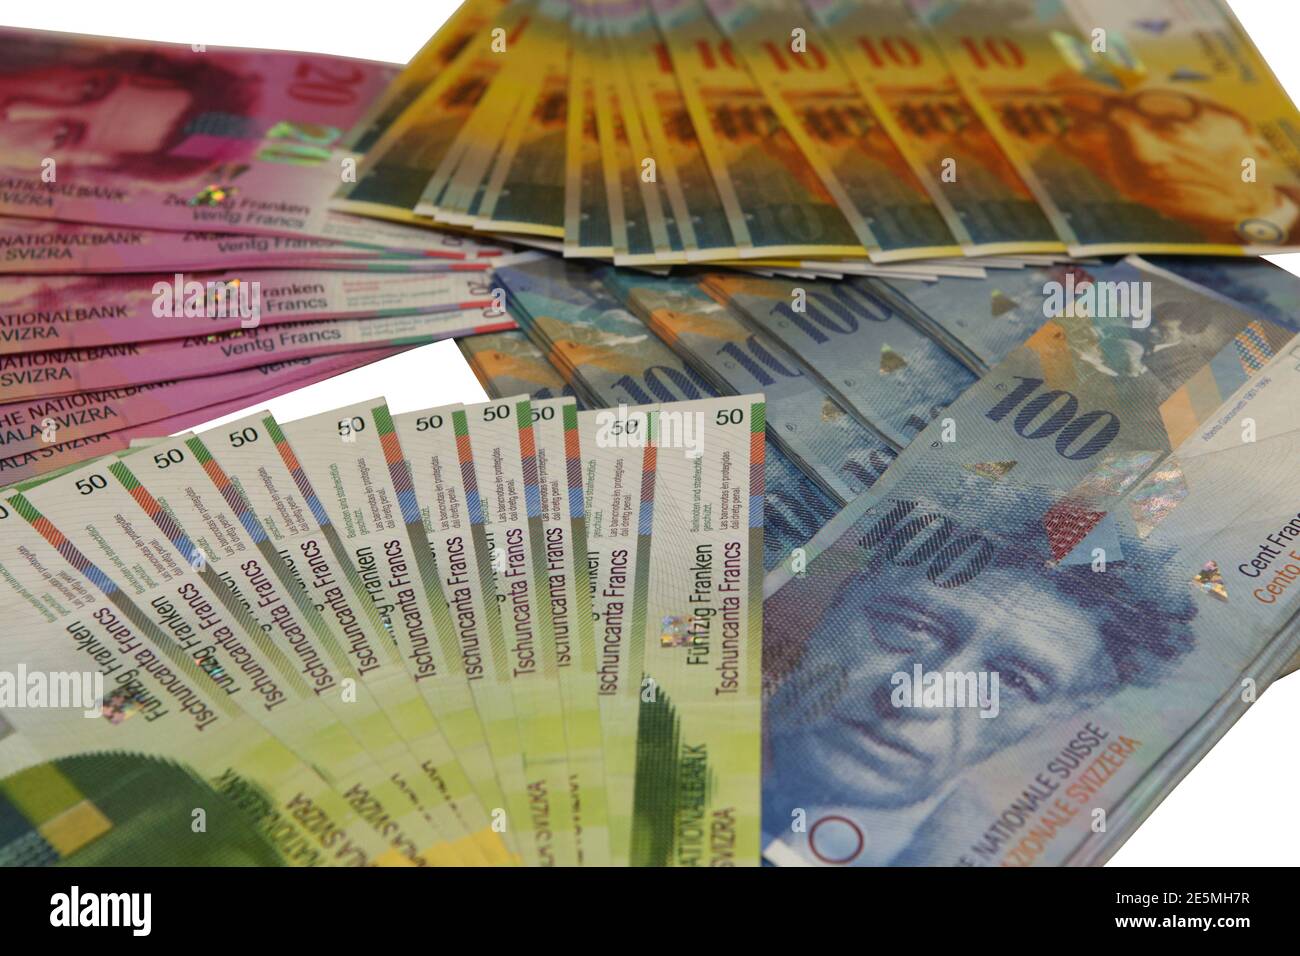 Geldscheine der Schweiz / Banknoten Schweizer Franken / Swiss Money Stock Photo